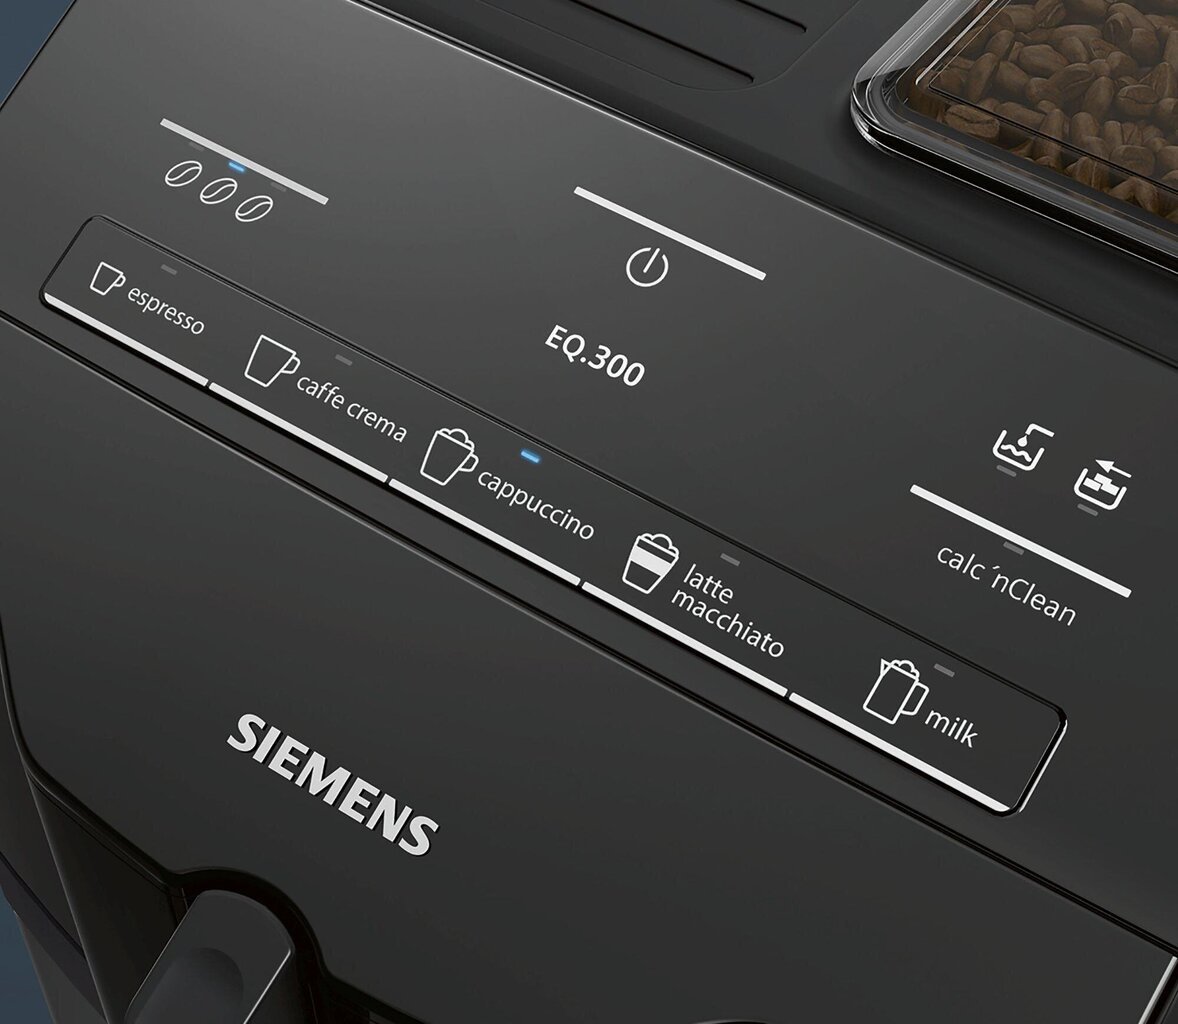 Siemens TI35A209RW kaina ir informacija | Kavos aparatai | pigu.lt